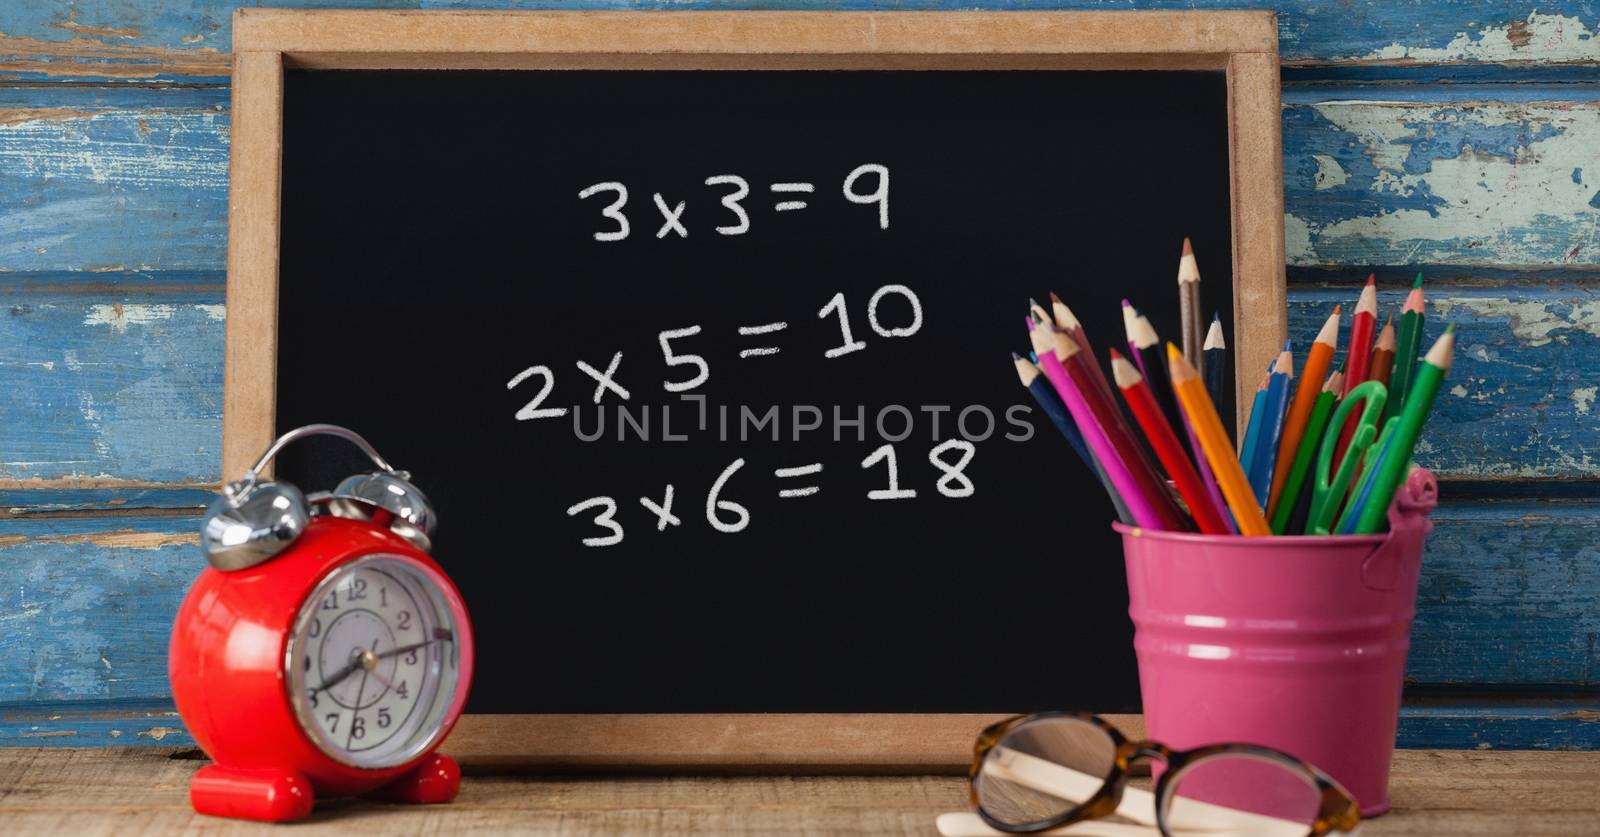 Math education drawings on blackboard for school by Wavebreakmedia